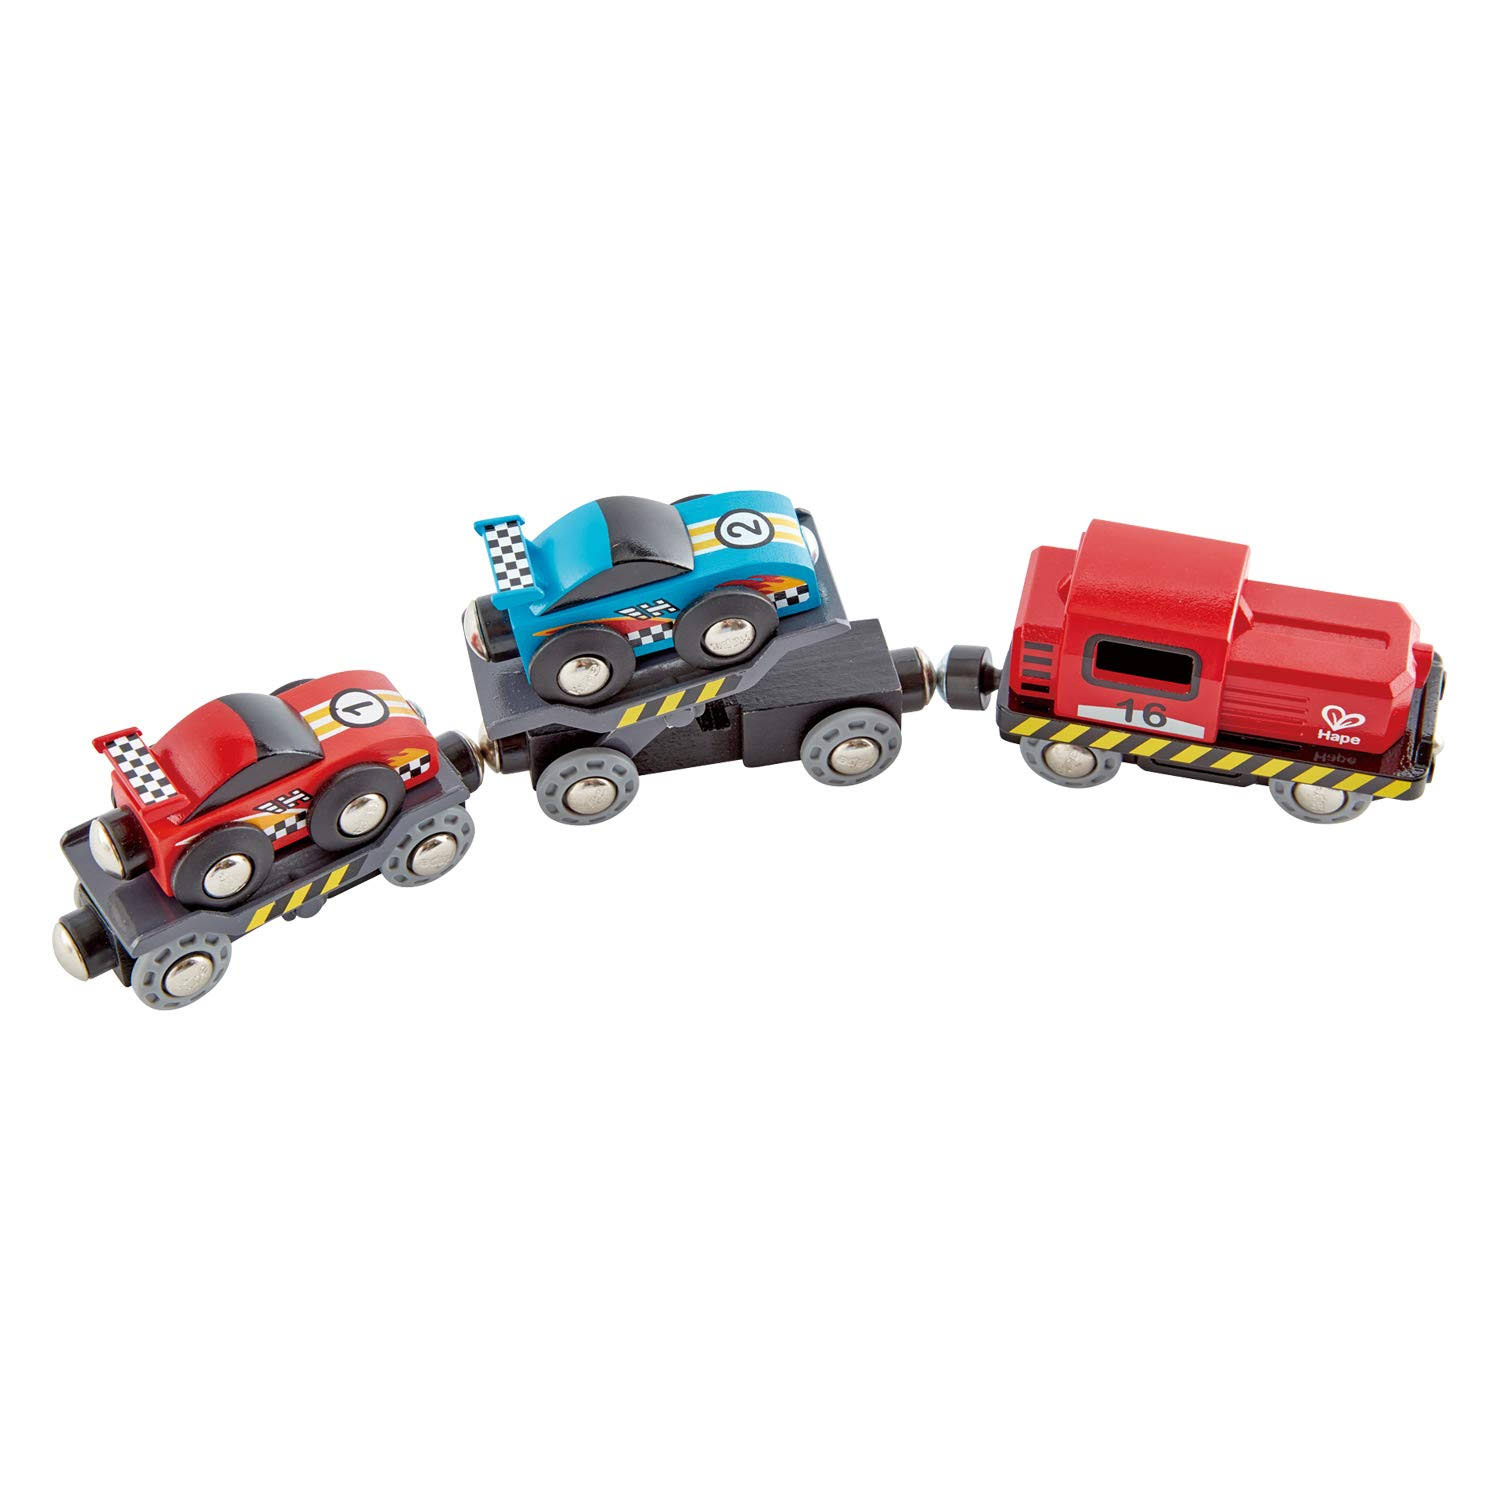 Hape Toys Race Car Transporter - 6pcs, 11cm x 19.7cm, 1.5cm